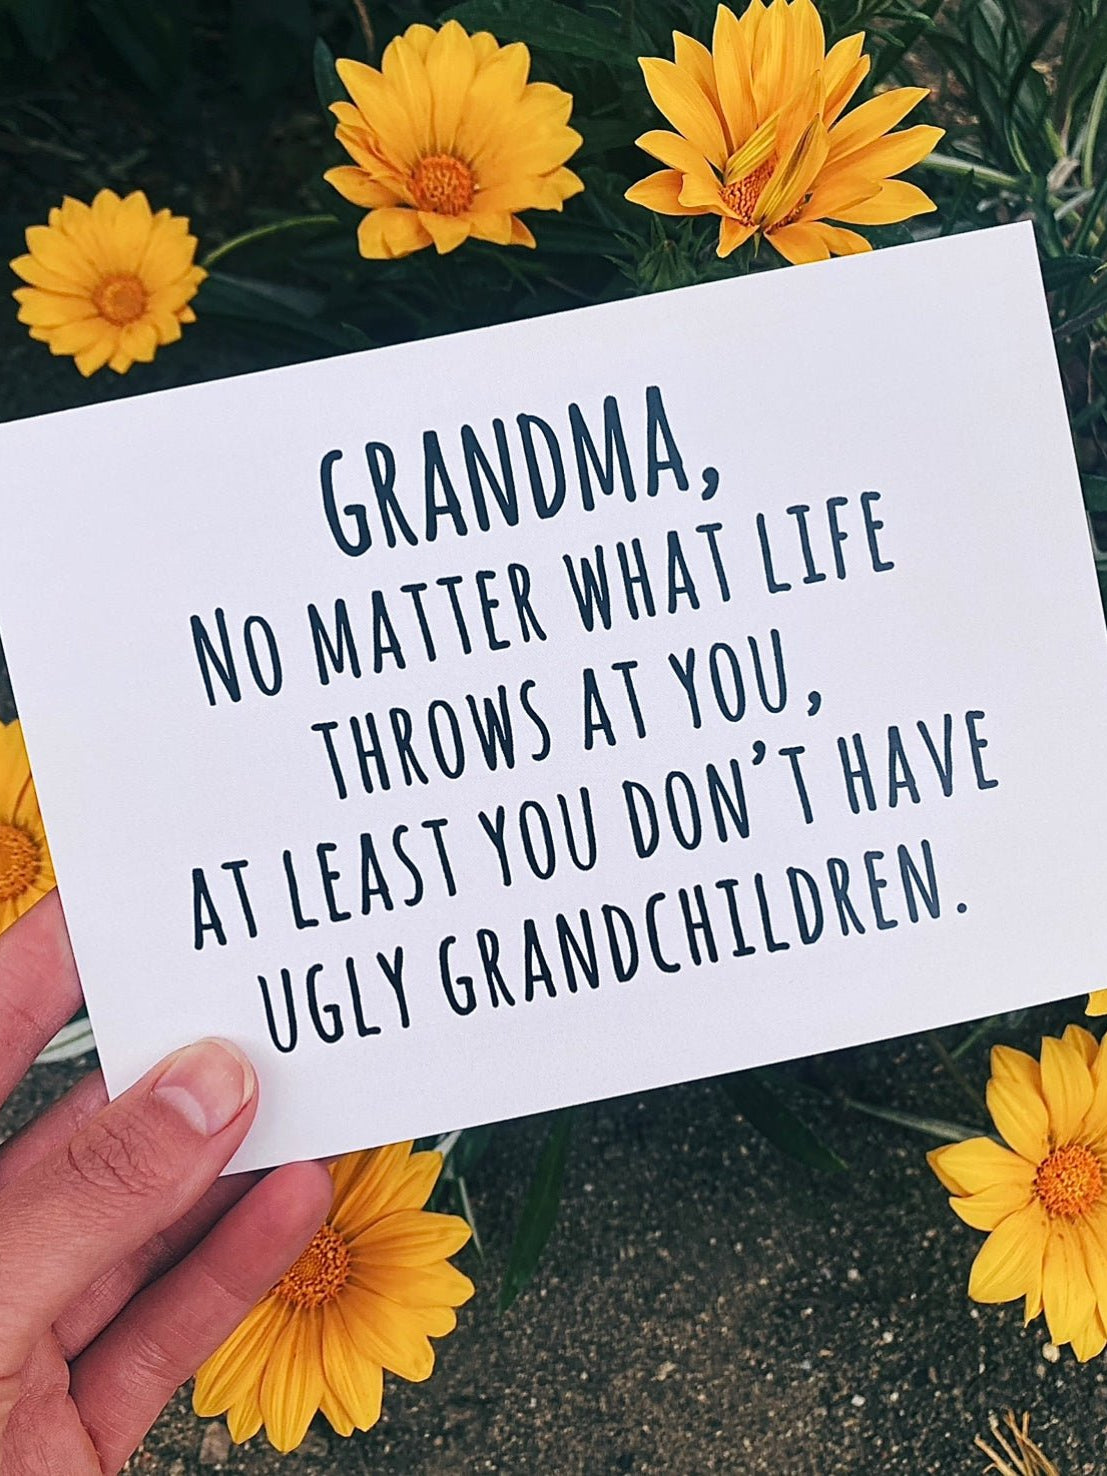 Grandma Atleast You Didn't Have Ugly Grandchildren Greeting Card - UntamedEgo LLC.